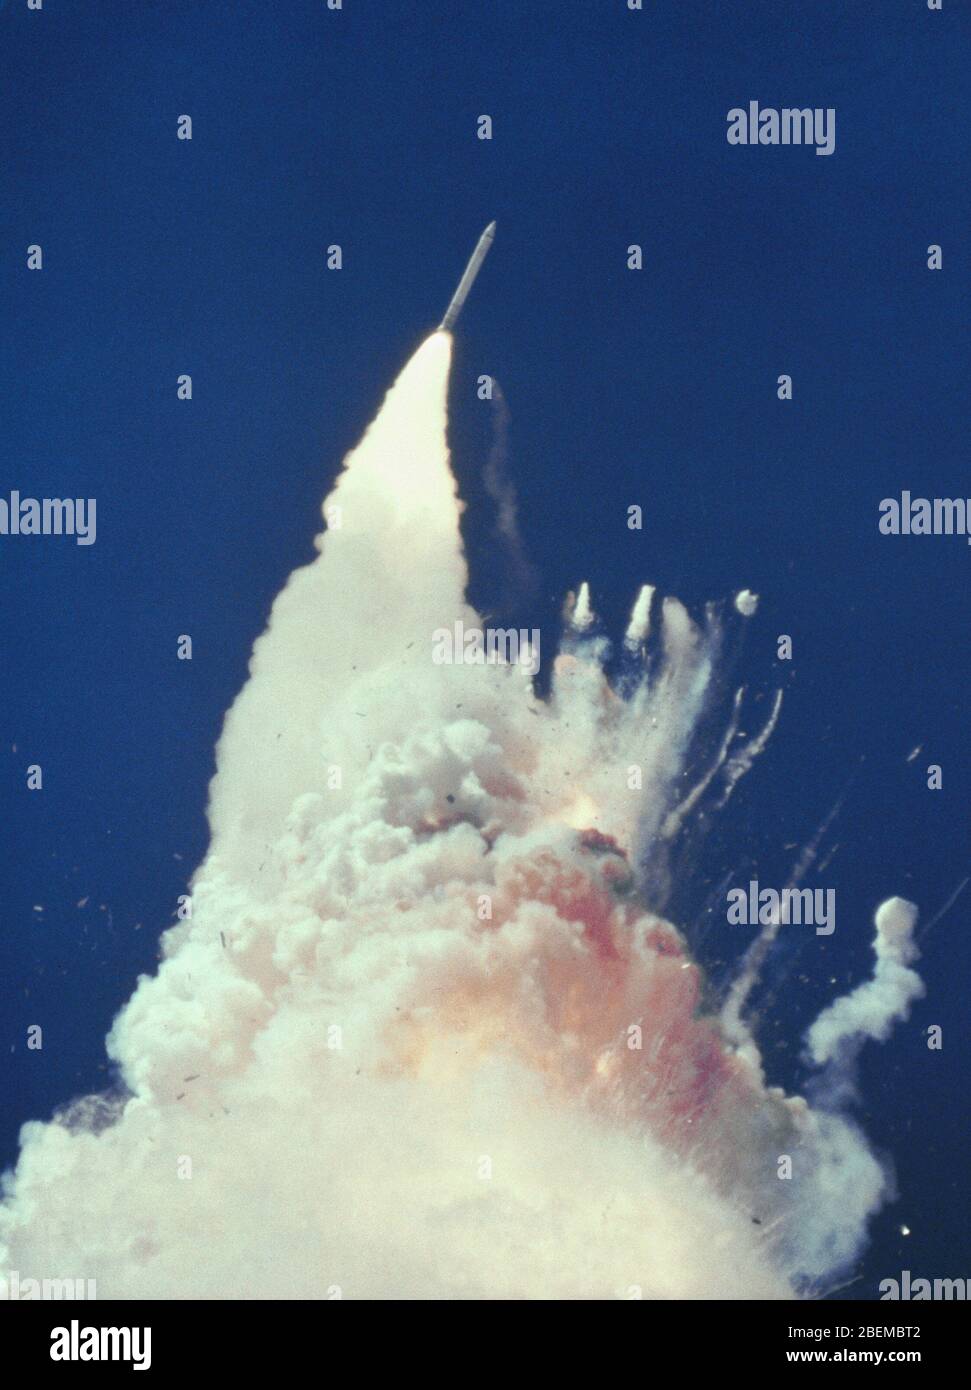 USA - 28 janvier 1986 - à environ 76 secondes, des fragments de l'Orbiter peuvent être vus tumbling contre un fond de feu, de fumée et de propagellan vaporisé Banque D'Images